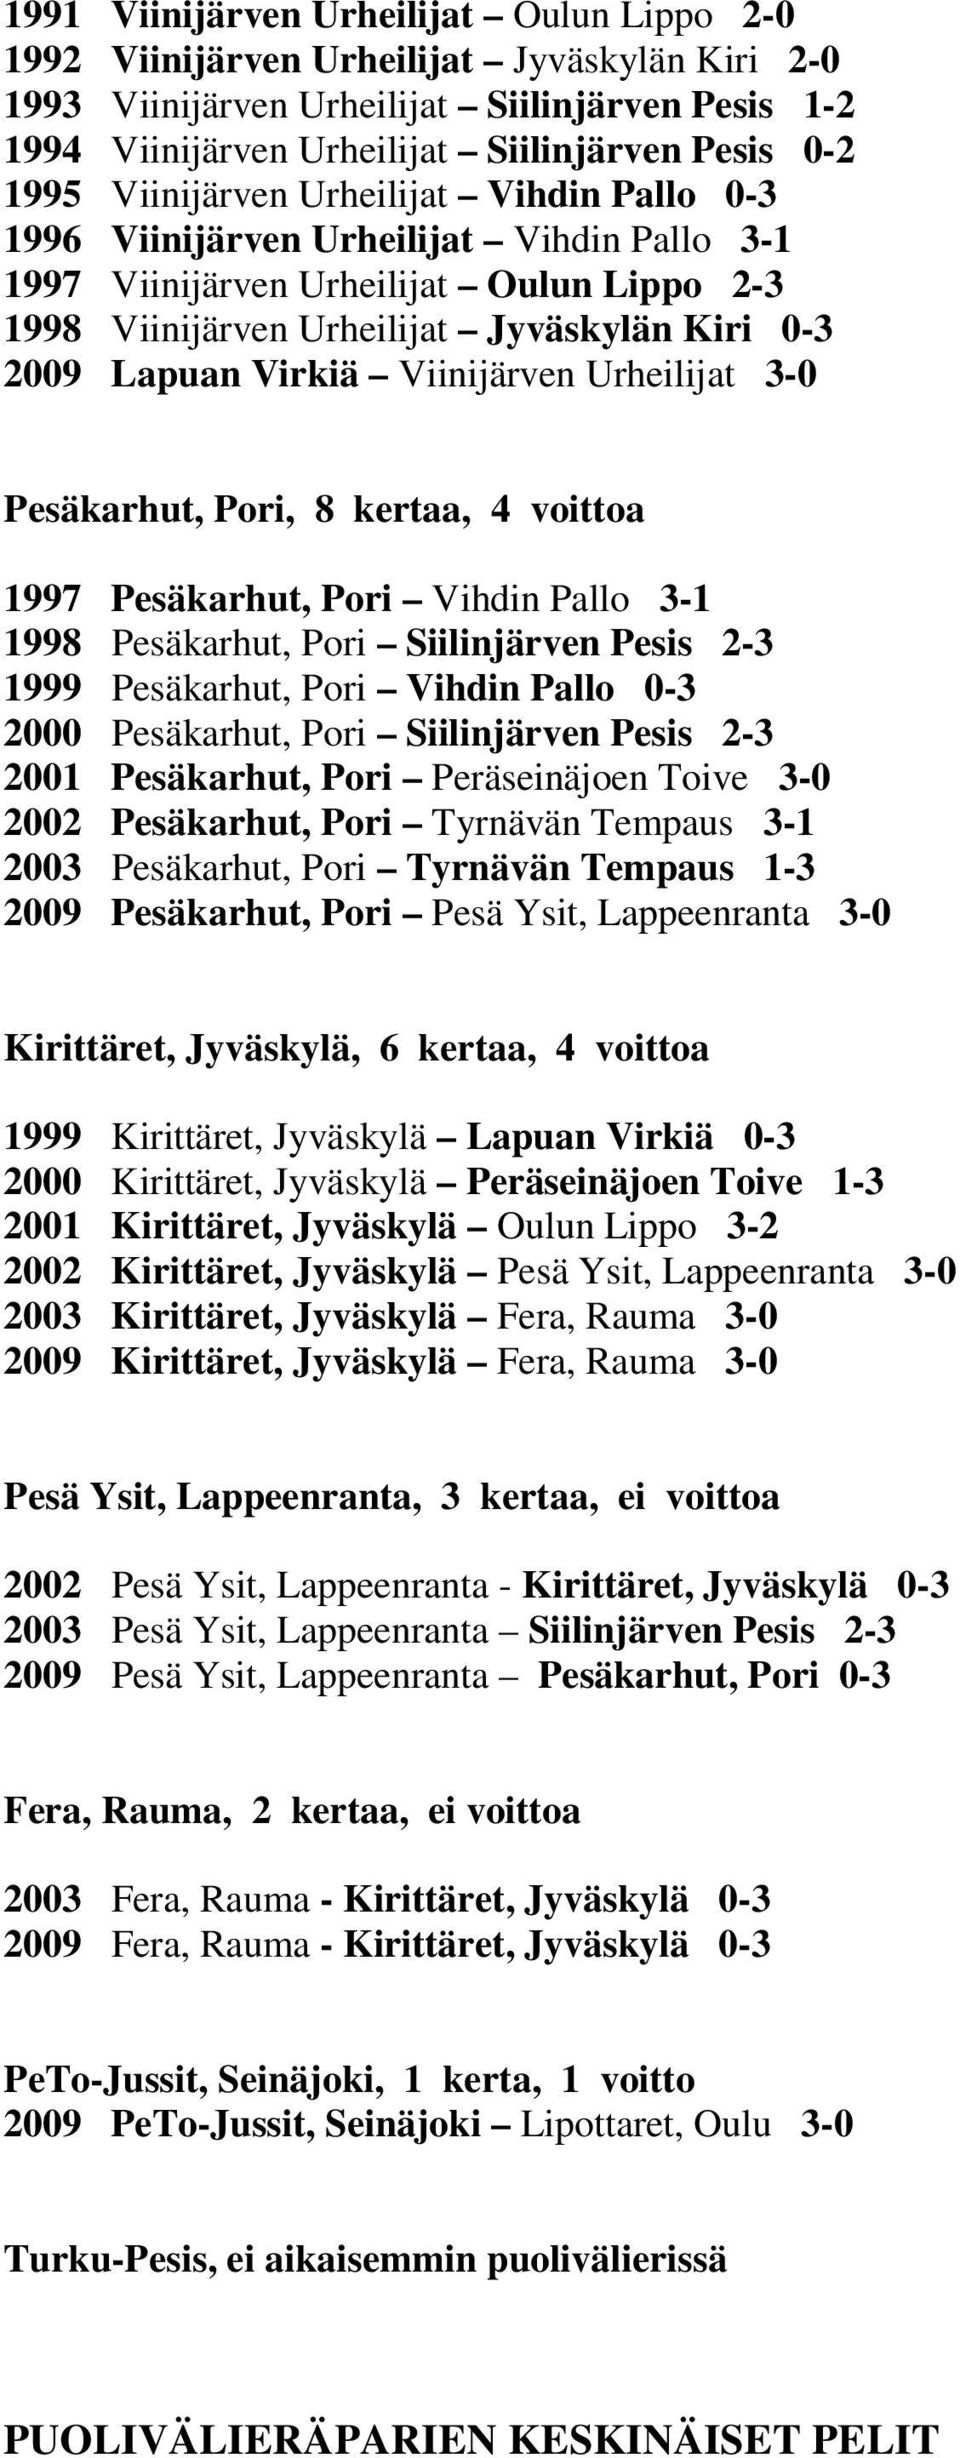 Viinijärven Urheilijat 3-0 Pesäkarhut, Pori, 8 kertaa, 4 voittoa 1997 Pesäkarhut, Pori Vihdin Pallo 3-1 1998 Pesäkarhut, Pori Siilinjärven Pesis 2-3 1999 Pesäkarhut, Pori Vihdin Pallo 0-3 2000